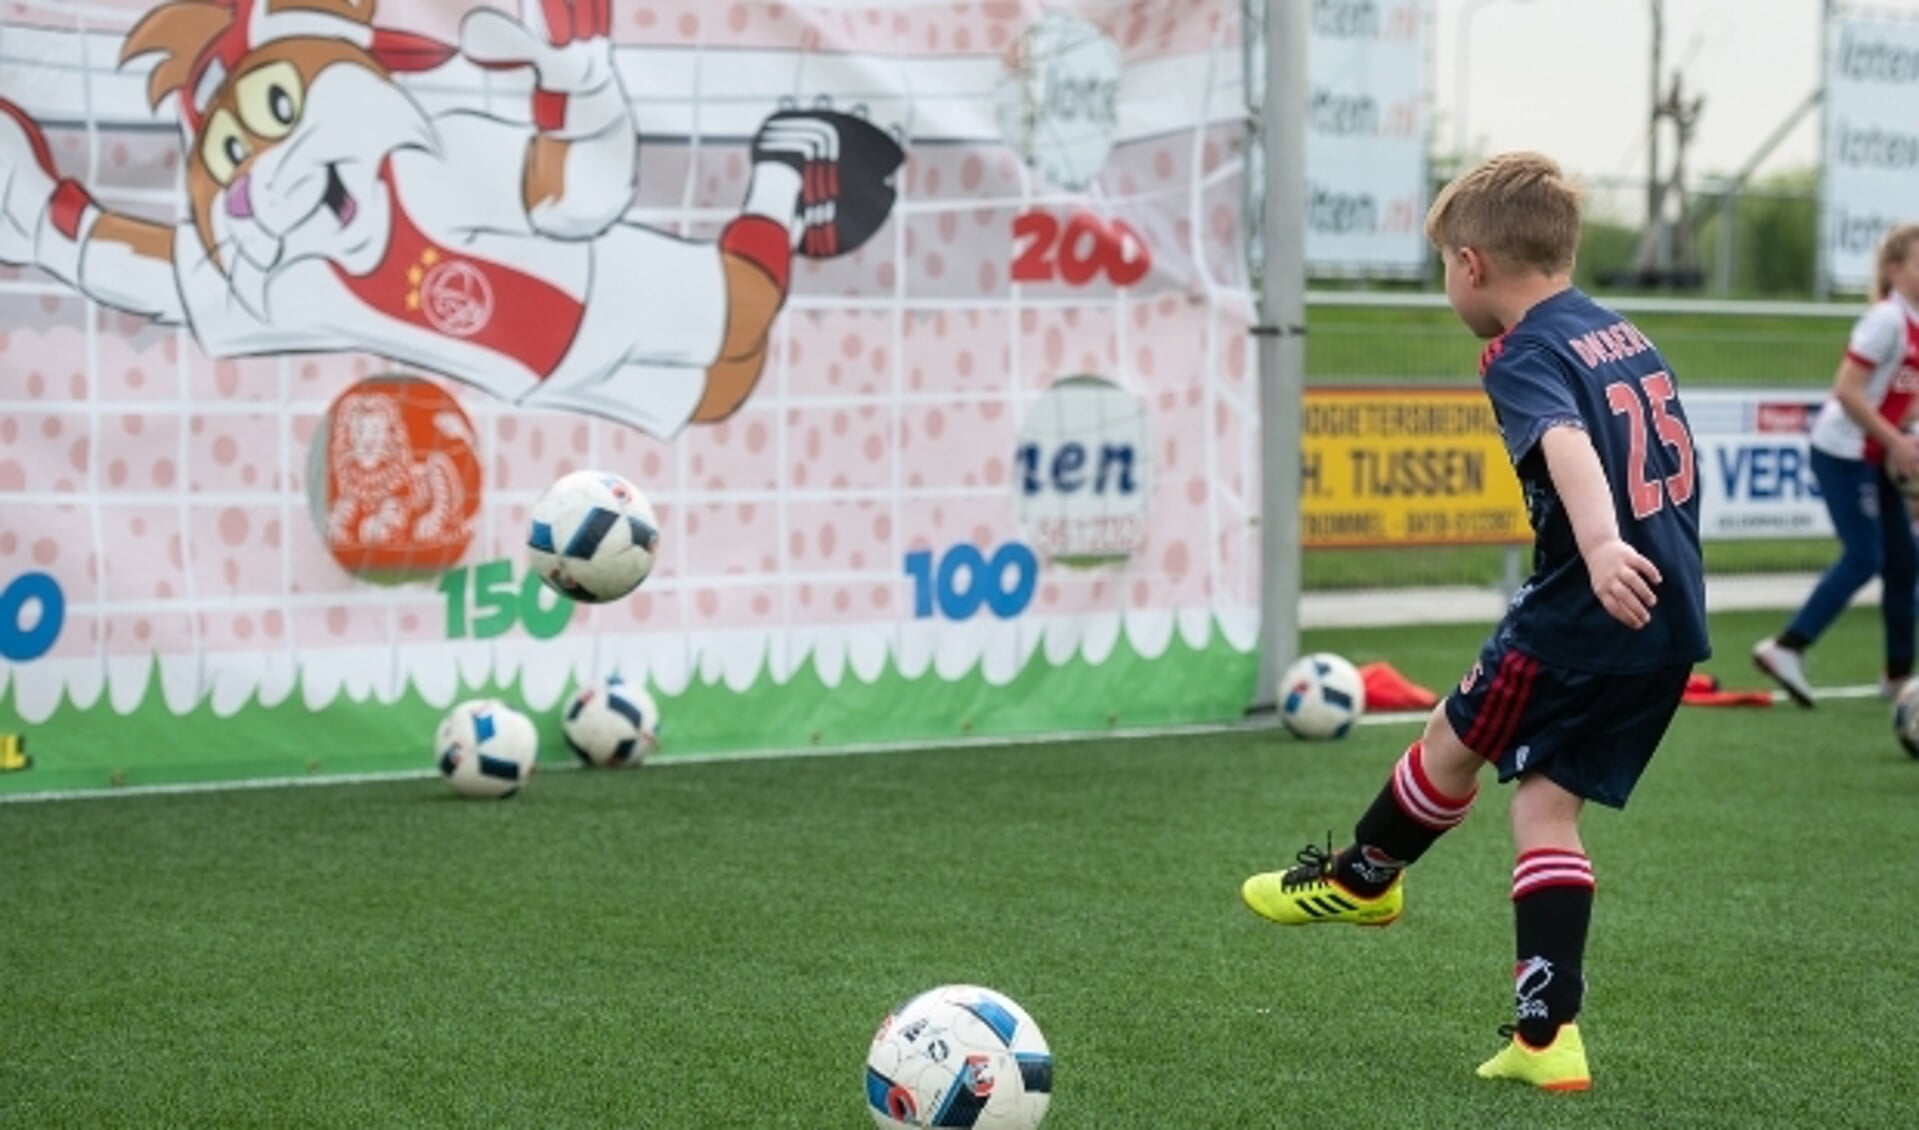 Tijdens de Ajax Kids Tour kun je allemaal verschillende voetbalspelletjes doen.